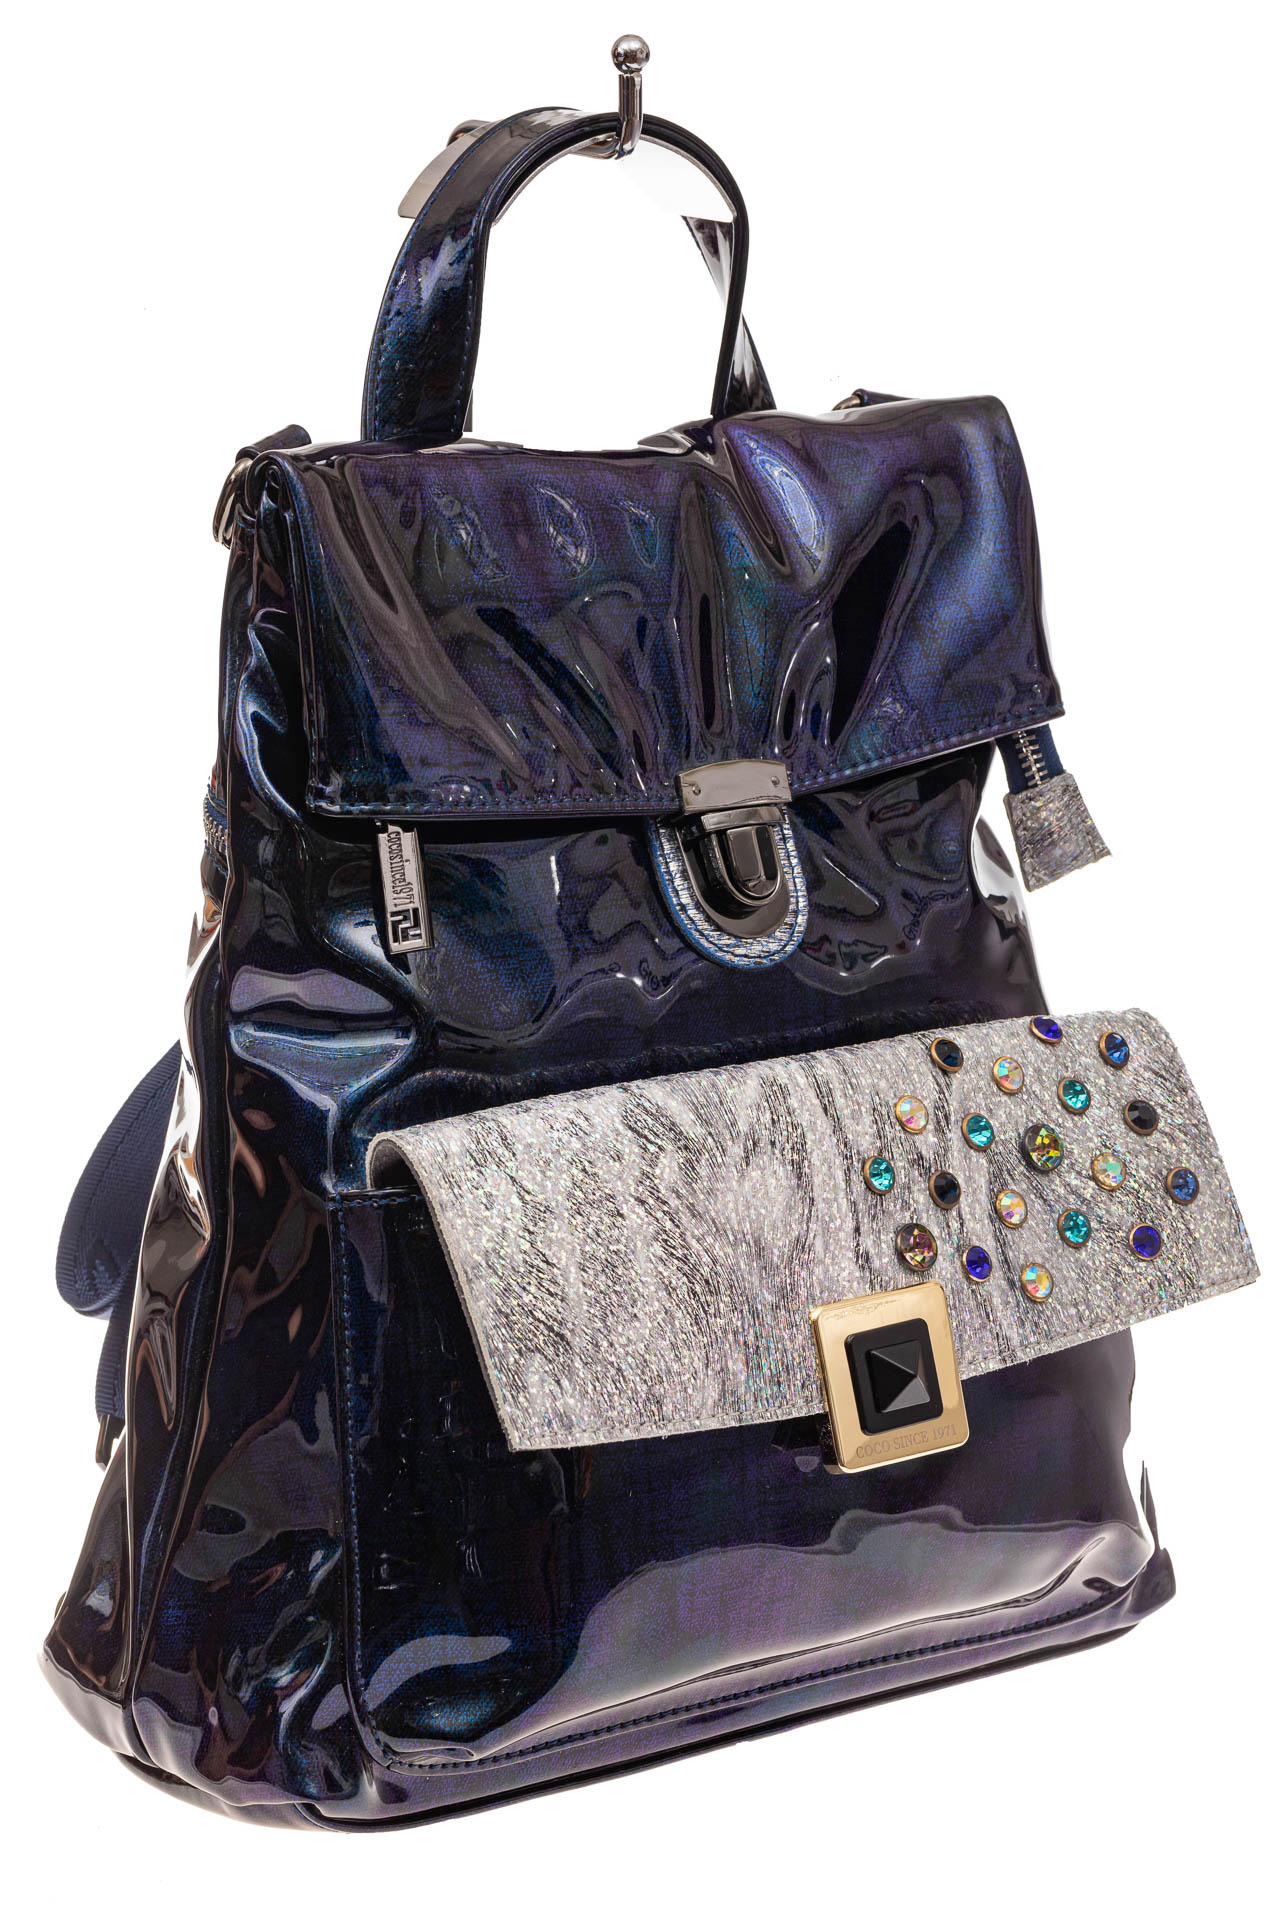 Женский рюкзак из искусственной и натуральной кожи, основной цвет синий металлик